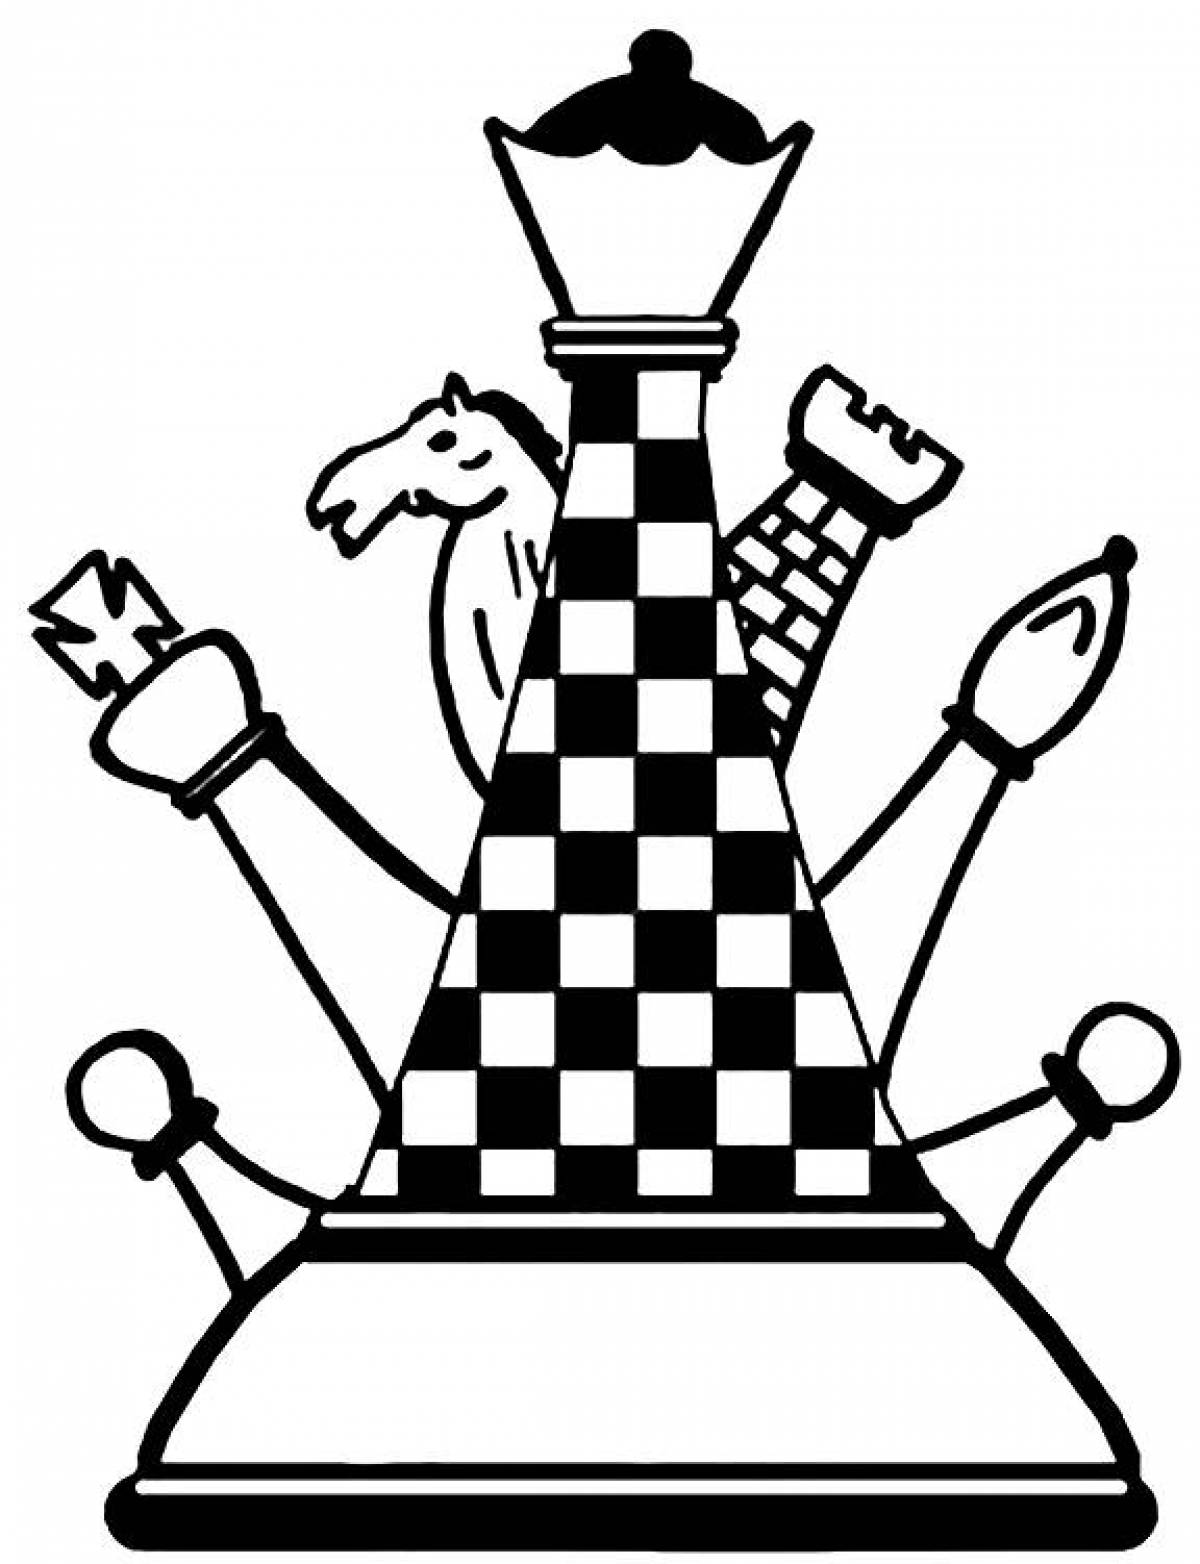 Шахматные фигуры иллюстрация